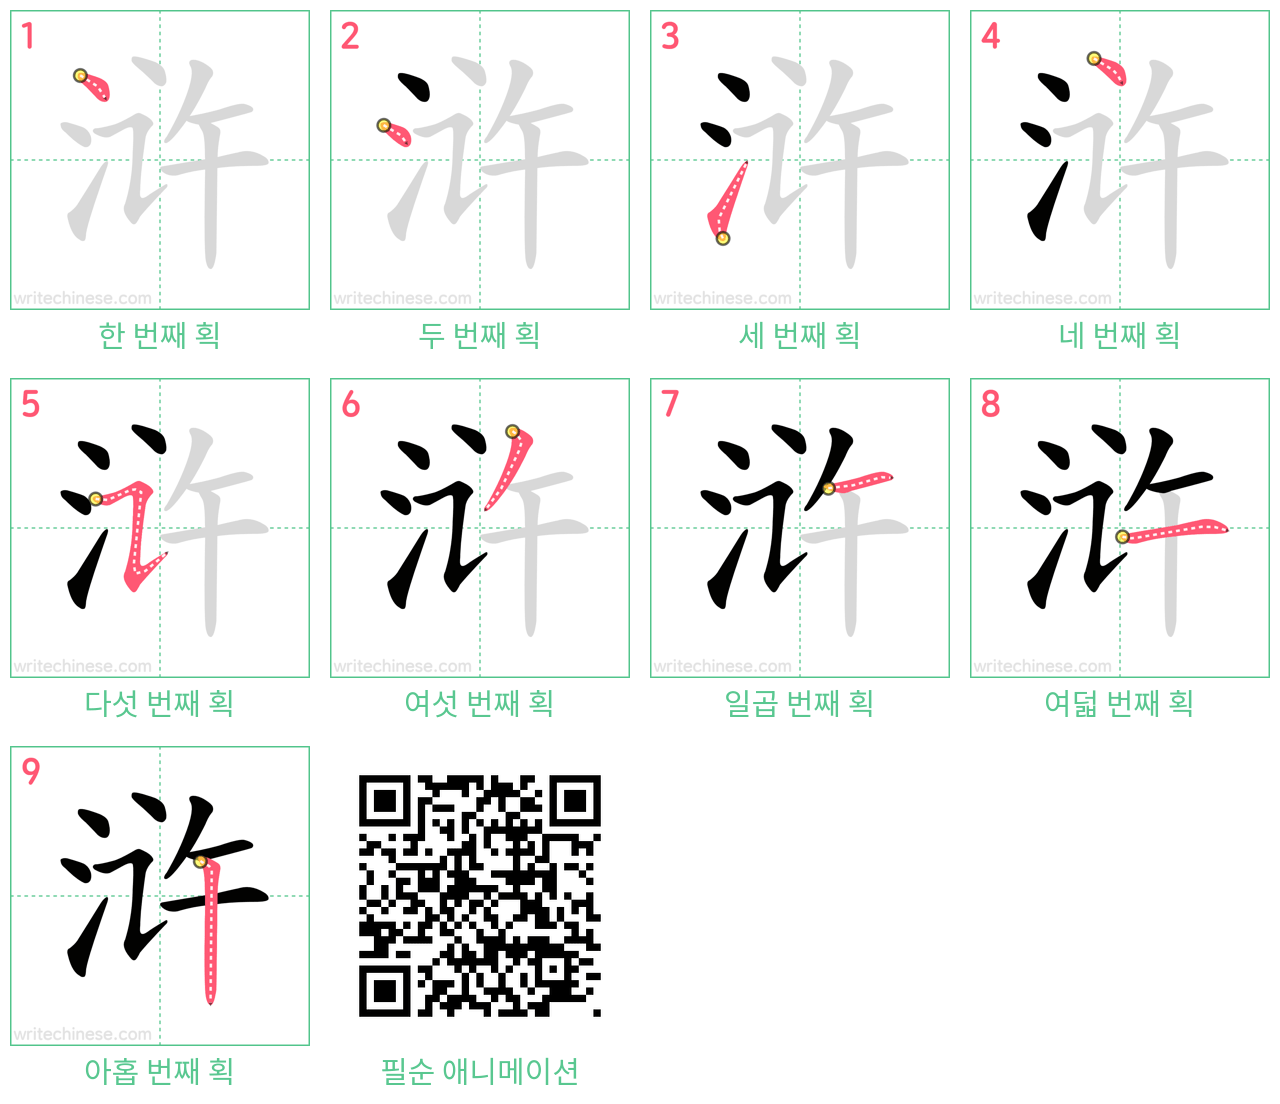 浒 step-by-step stroke order diagrams